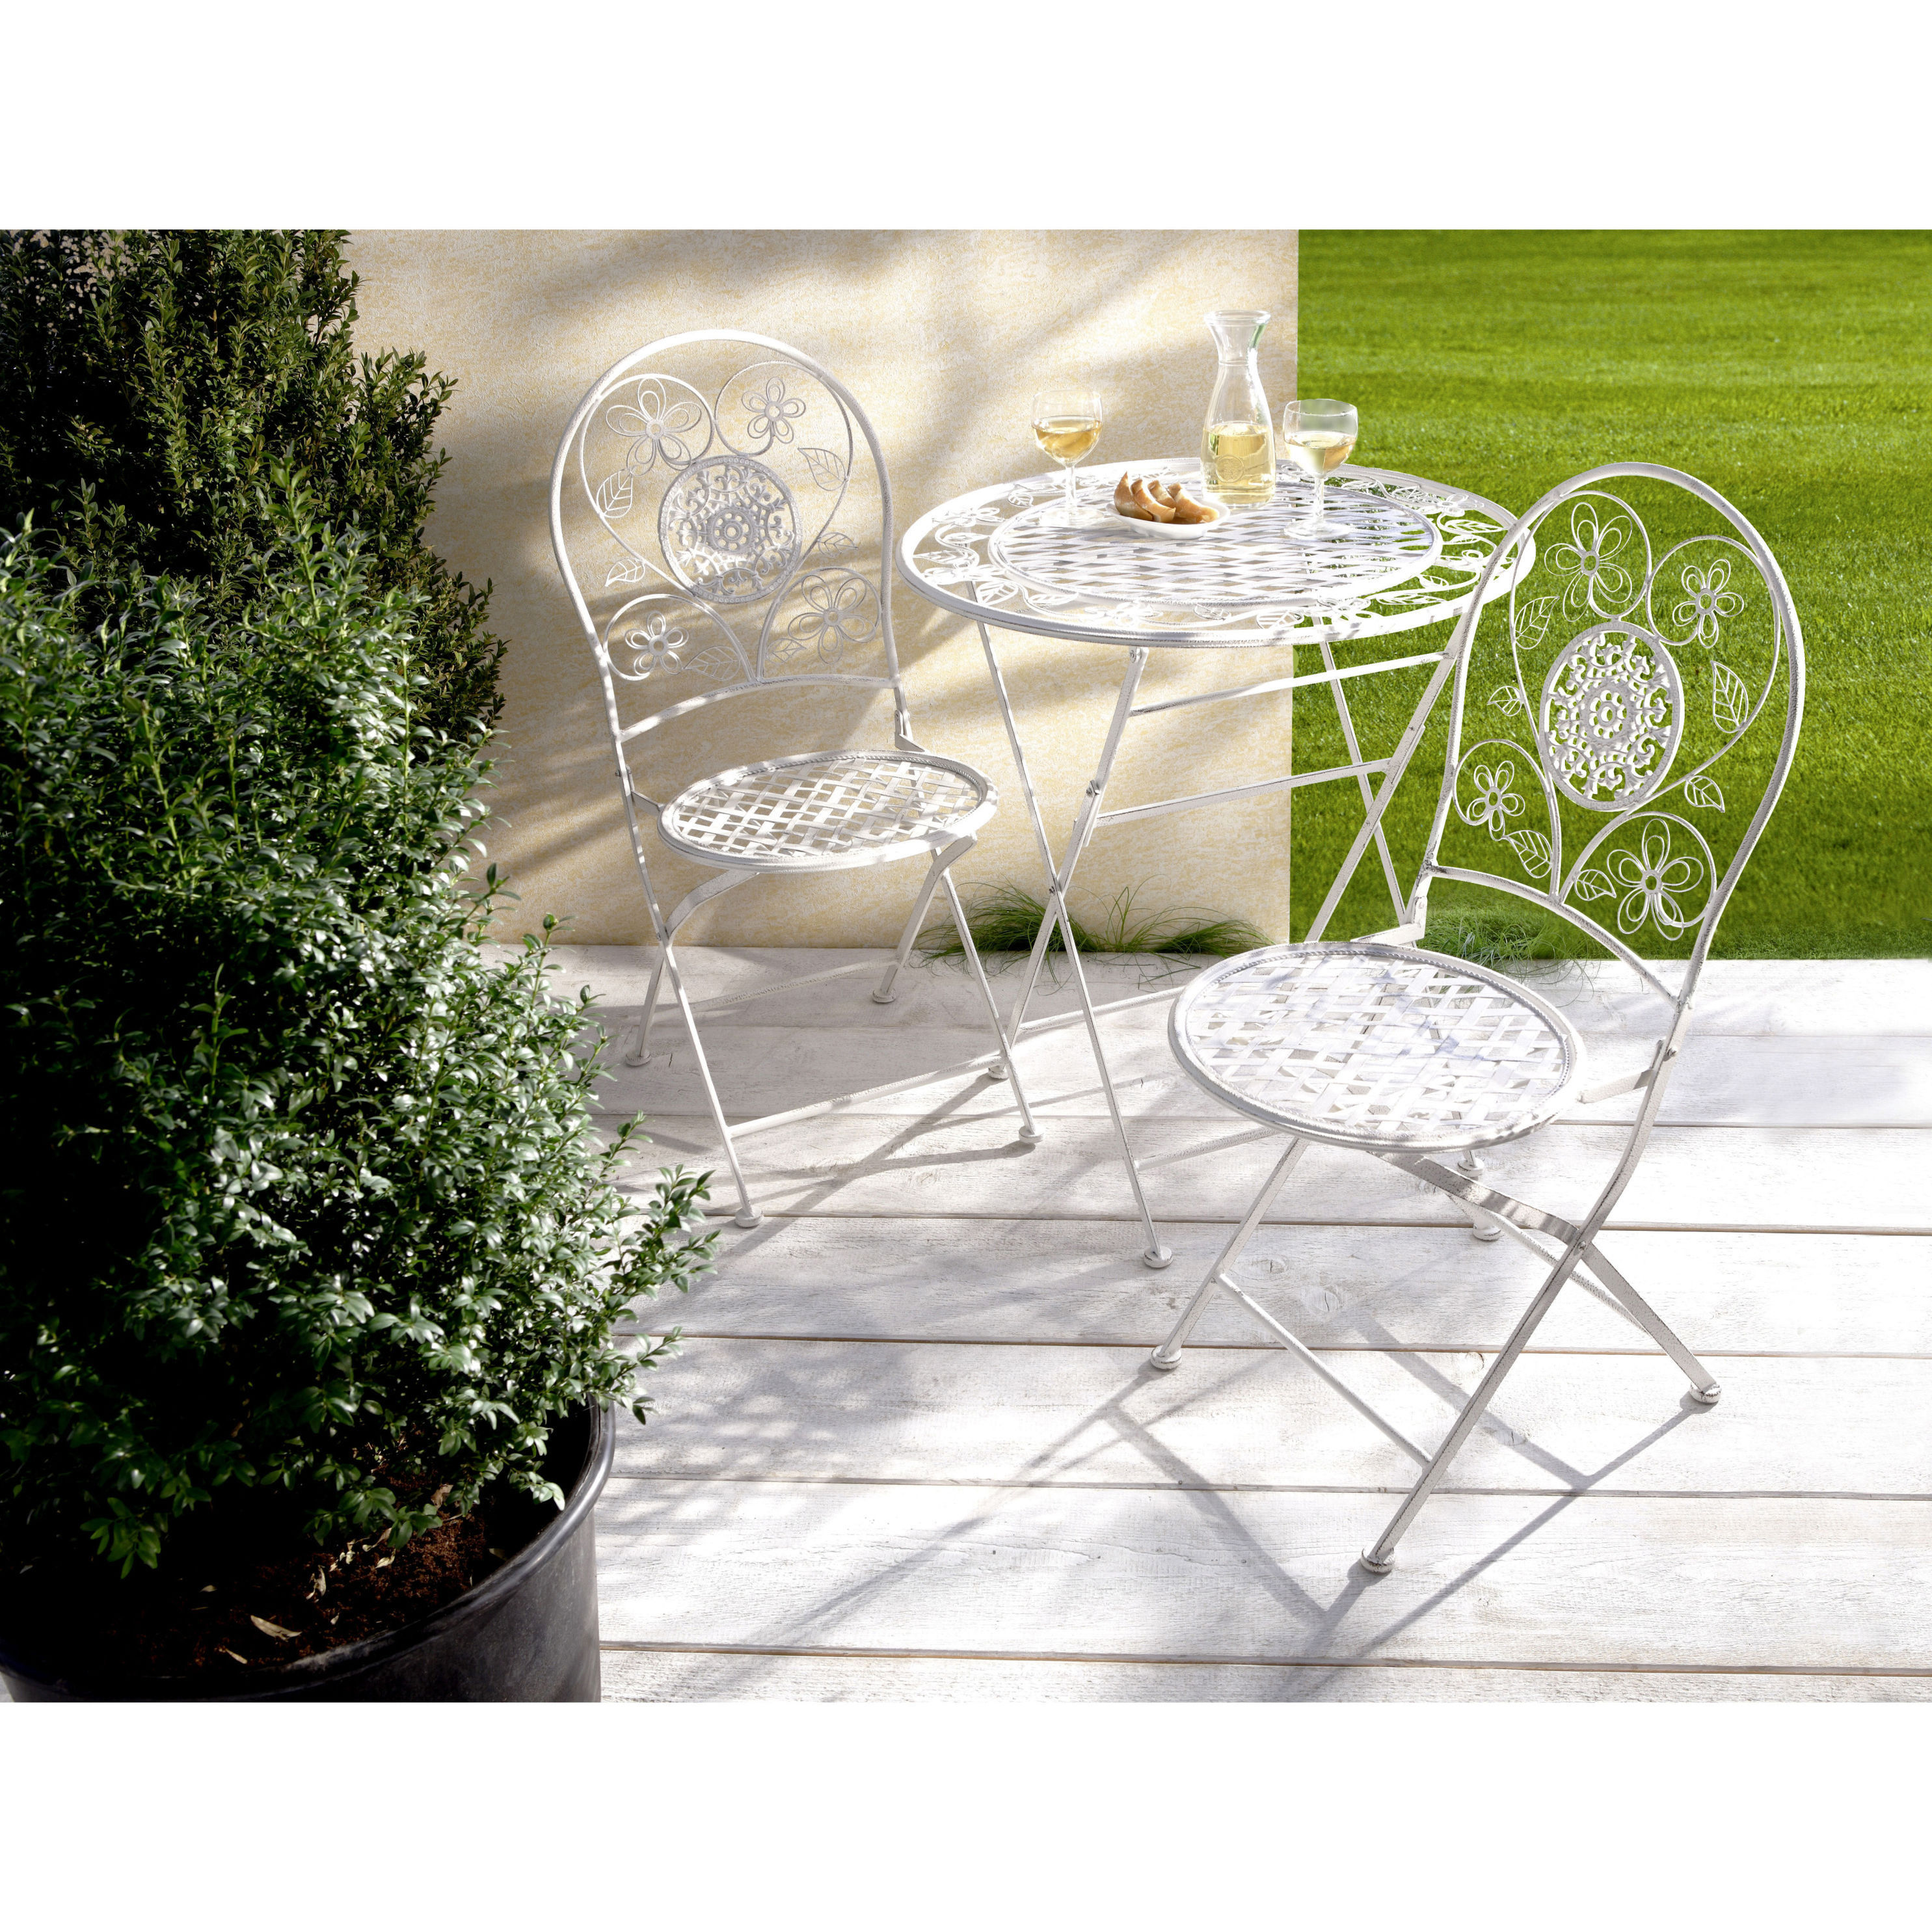 Metall-Gartenmöbel Romantik, 3er-Set Farbe: weiß | Weltbild.de